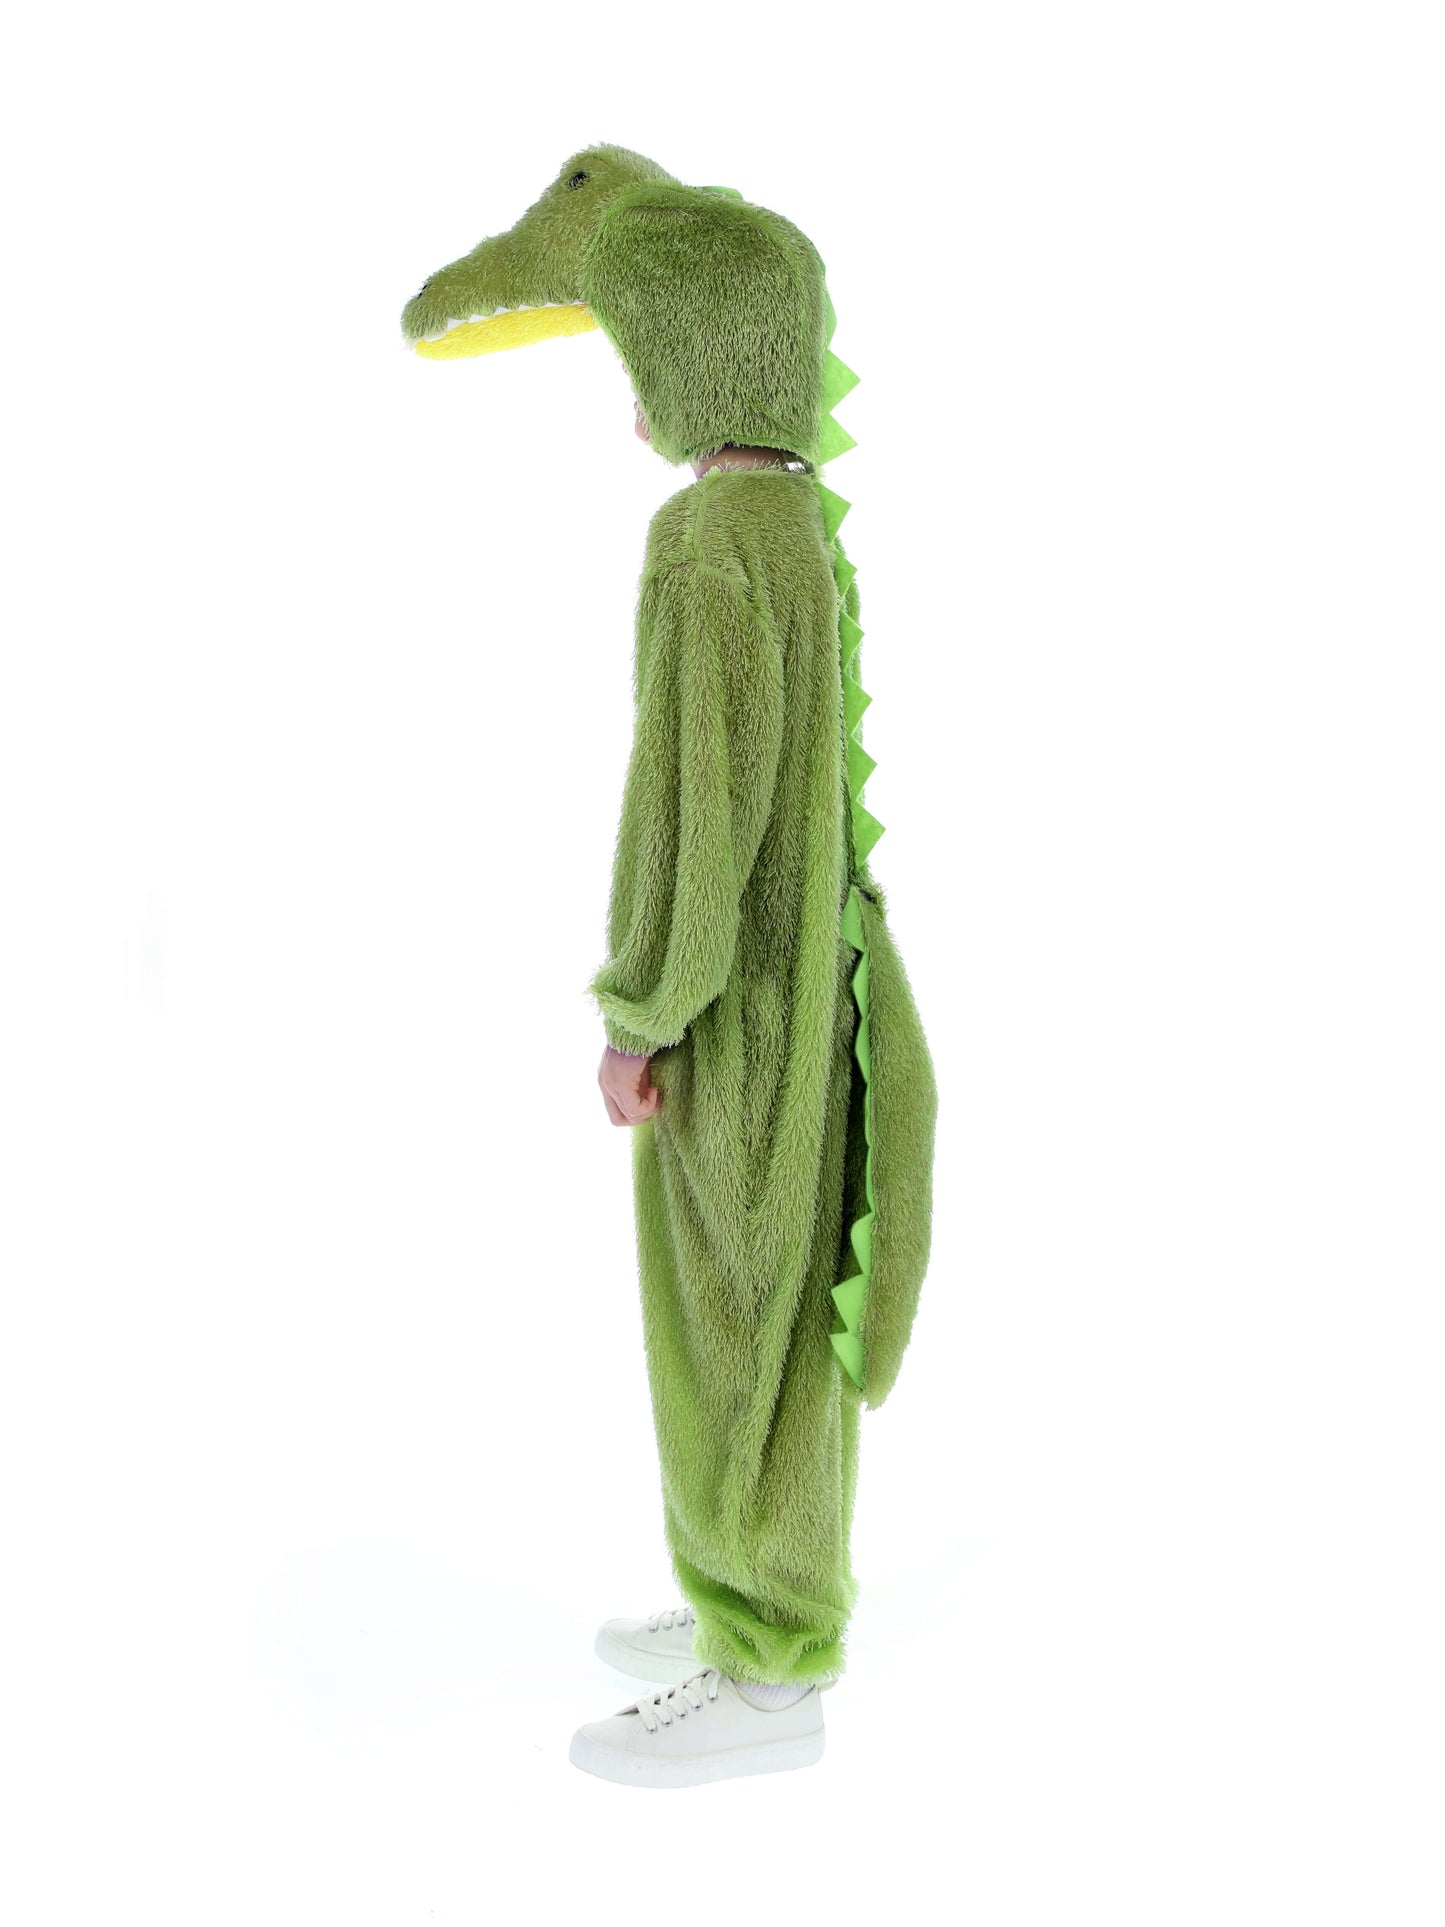 Crocodile Costume